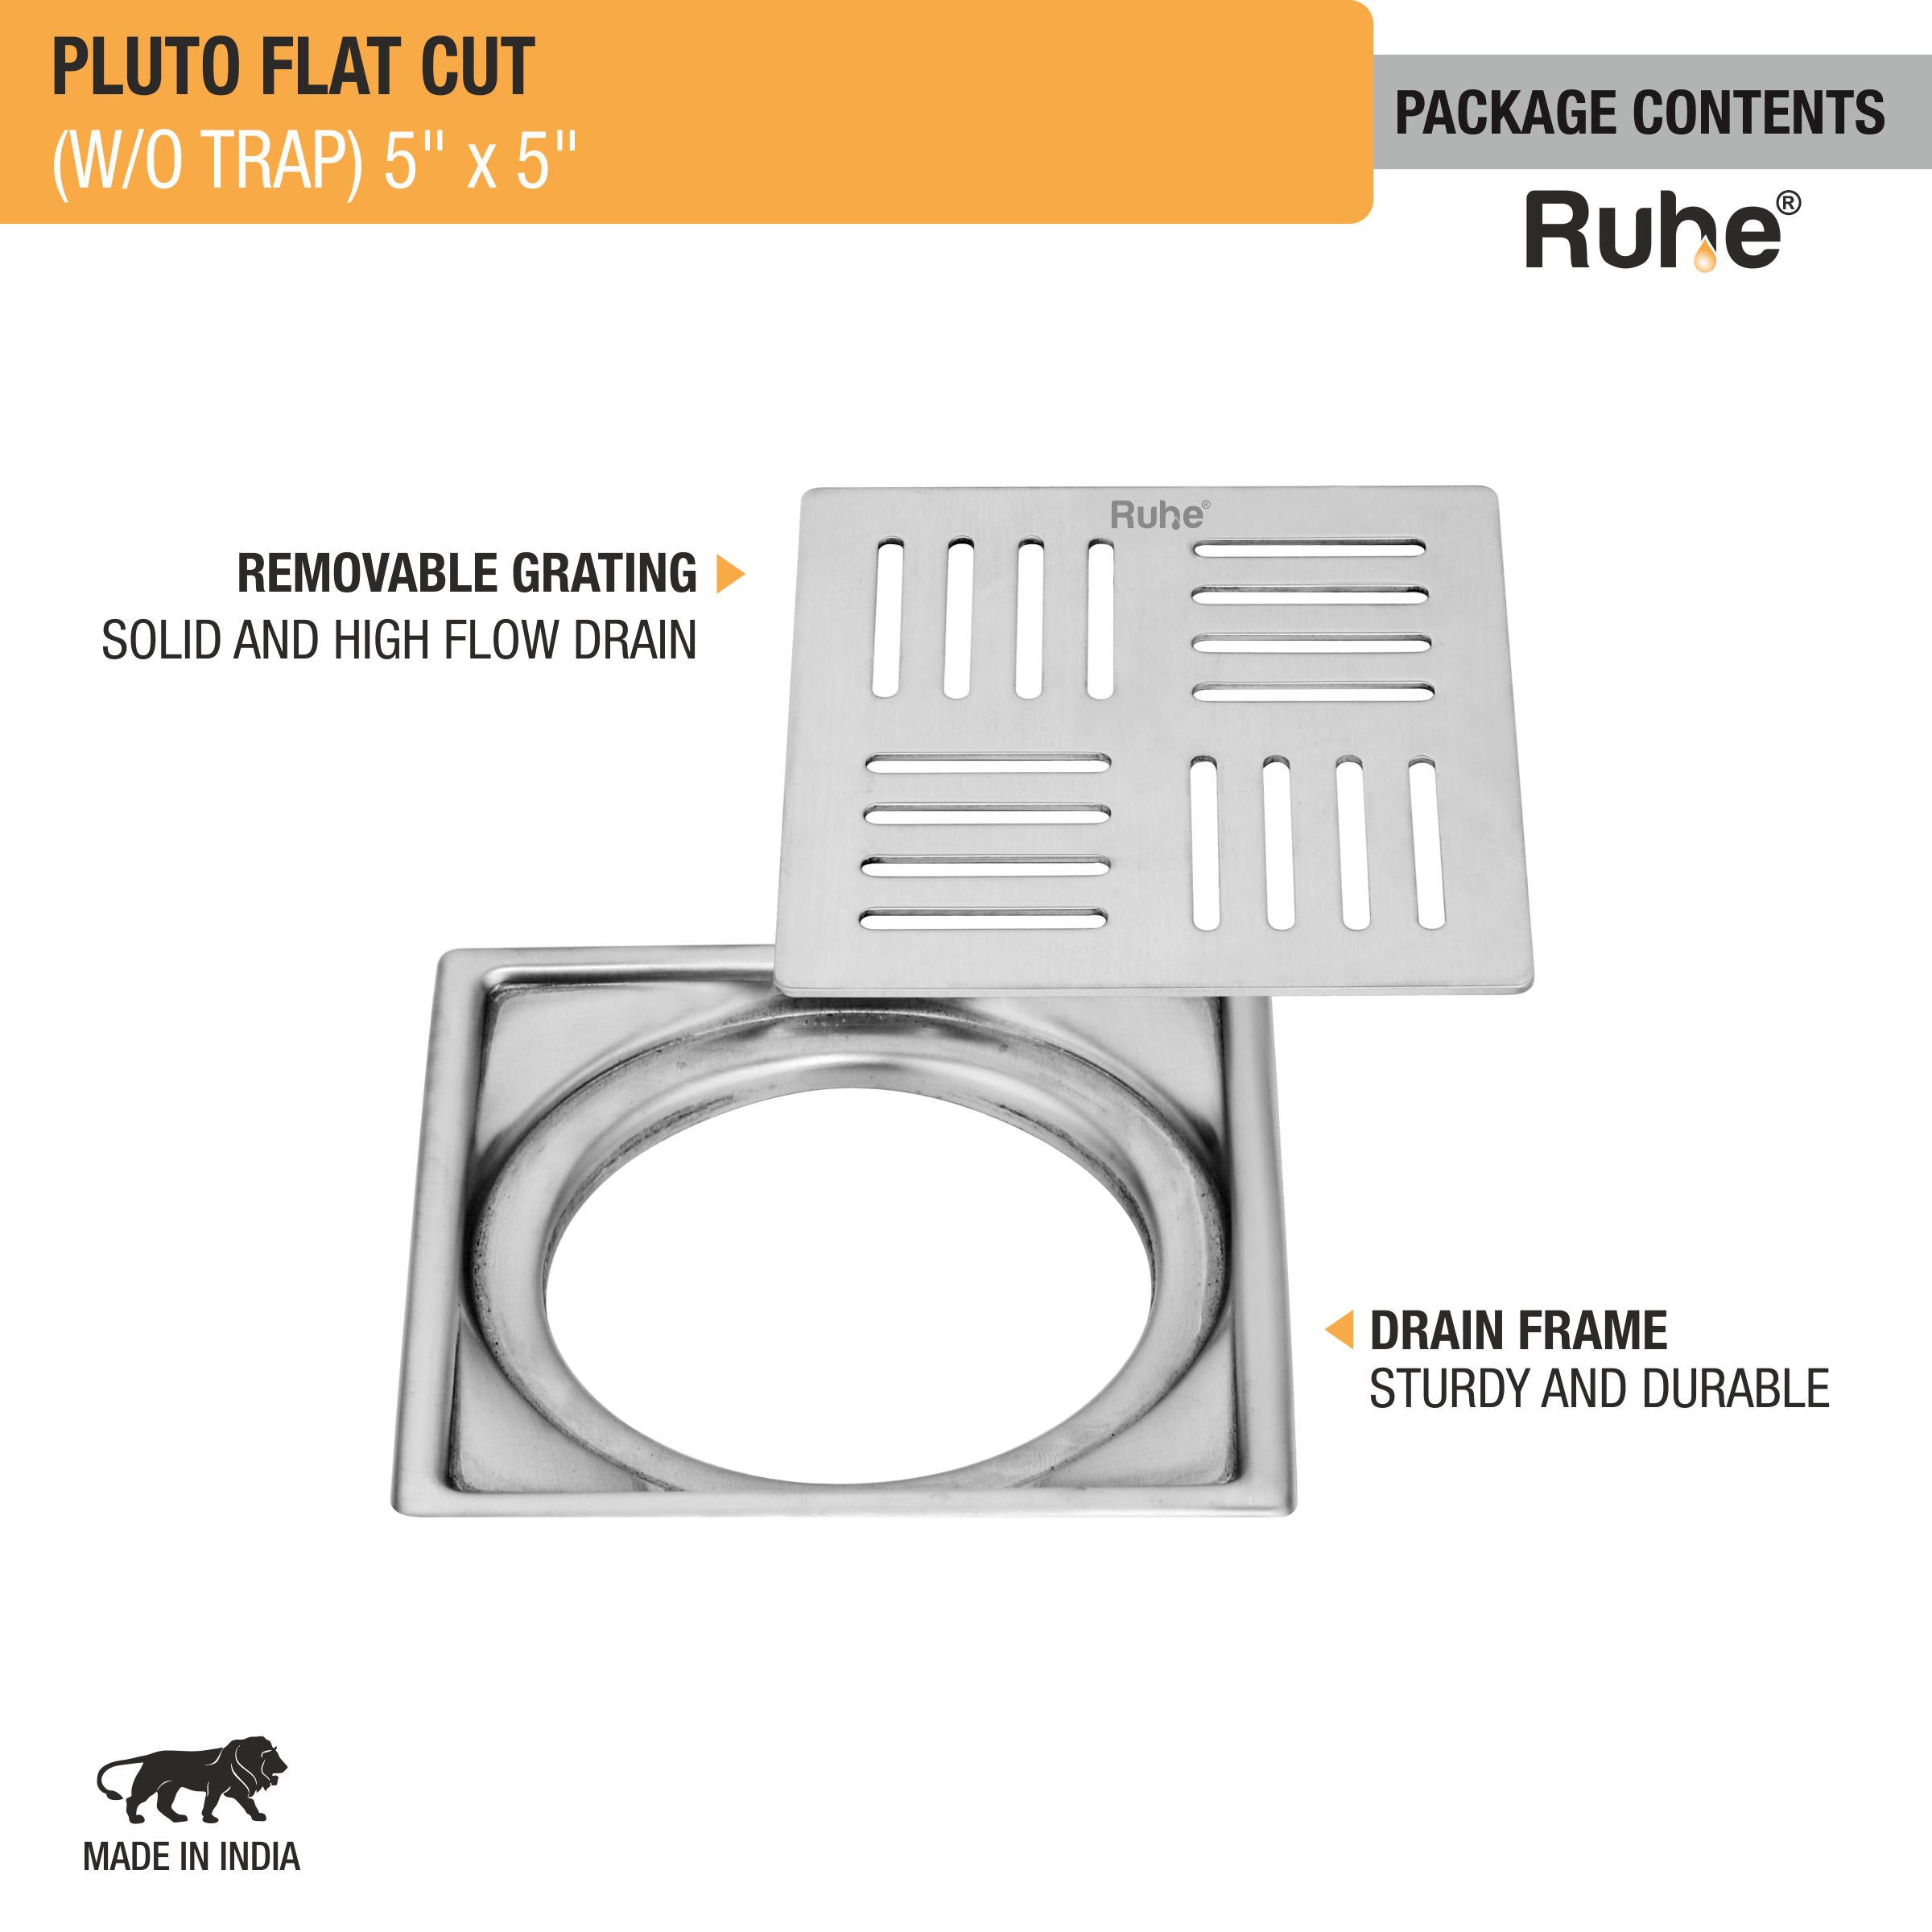 Pluto Square Premium Flat Cut Floor Drain (5 x 5 Inches) package content